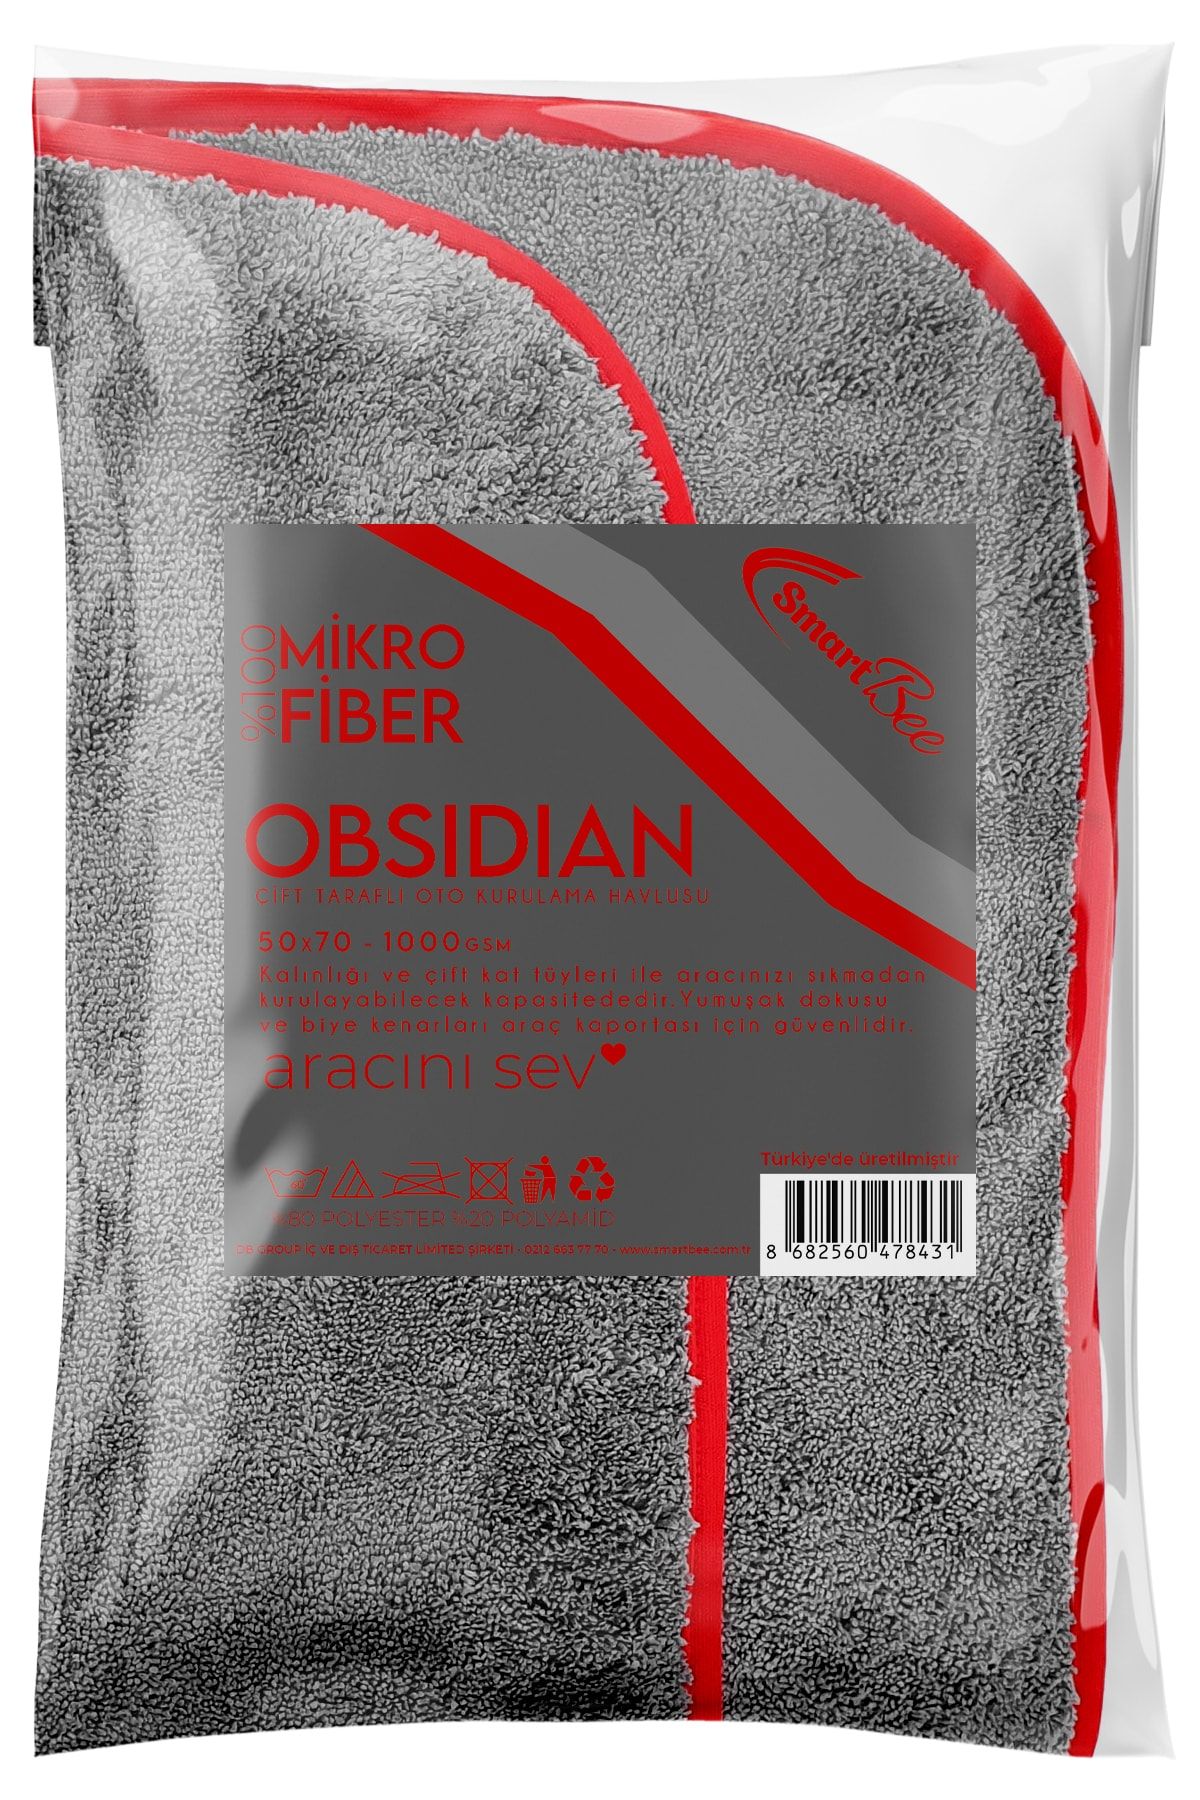 SmartBee Obsidian Mikrofiber Gri Oto Kurulama Havlusu 50×70 1000gsm